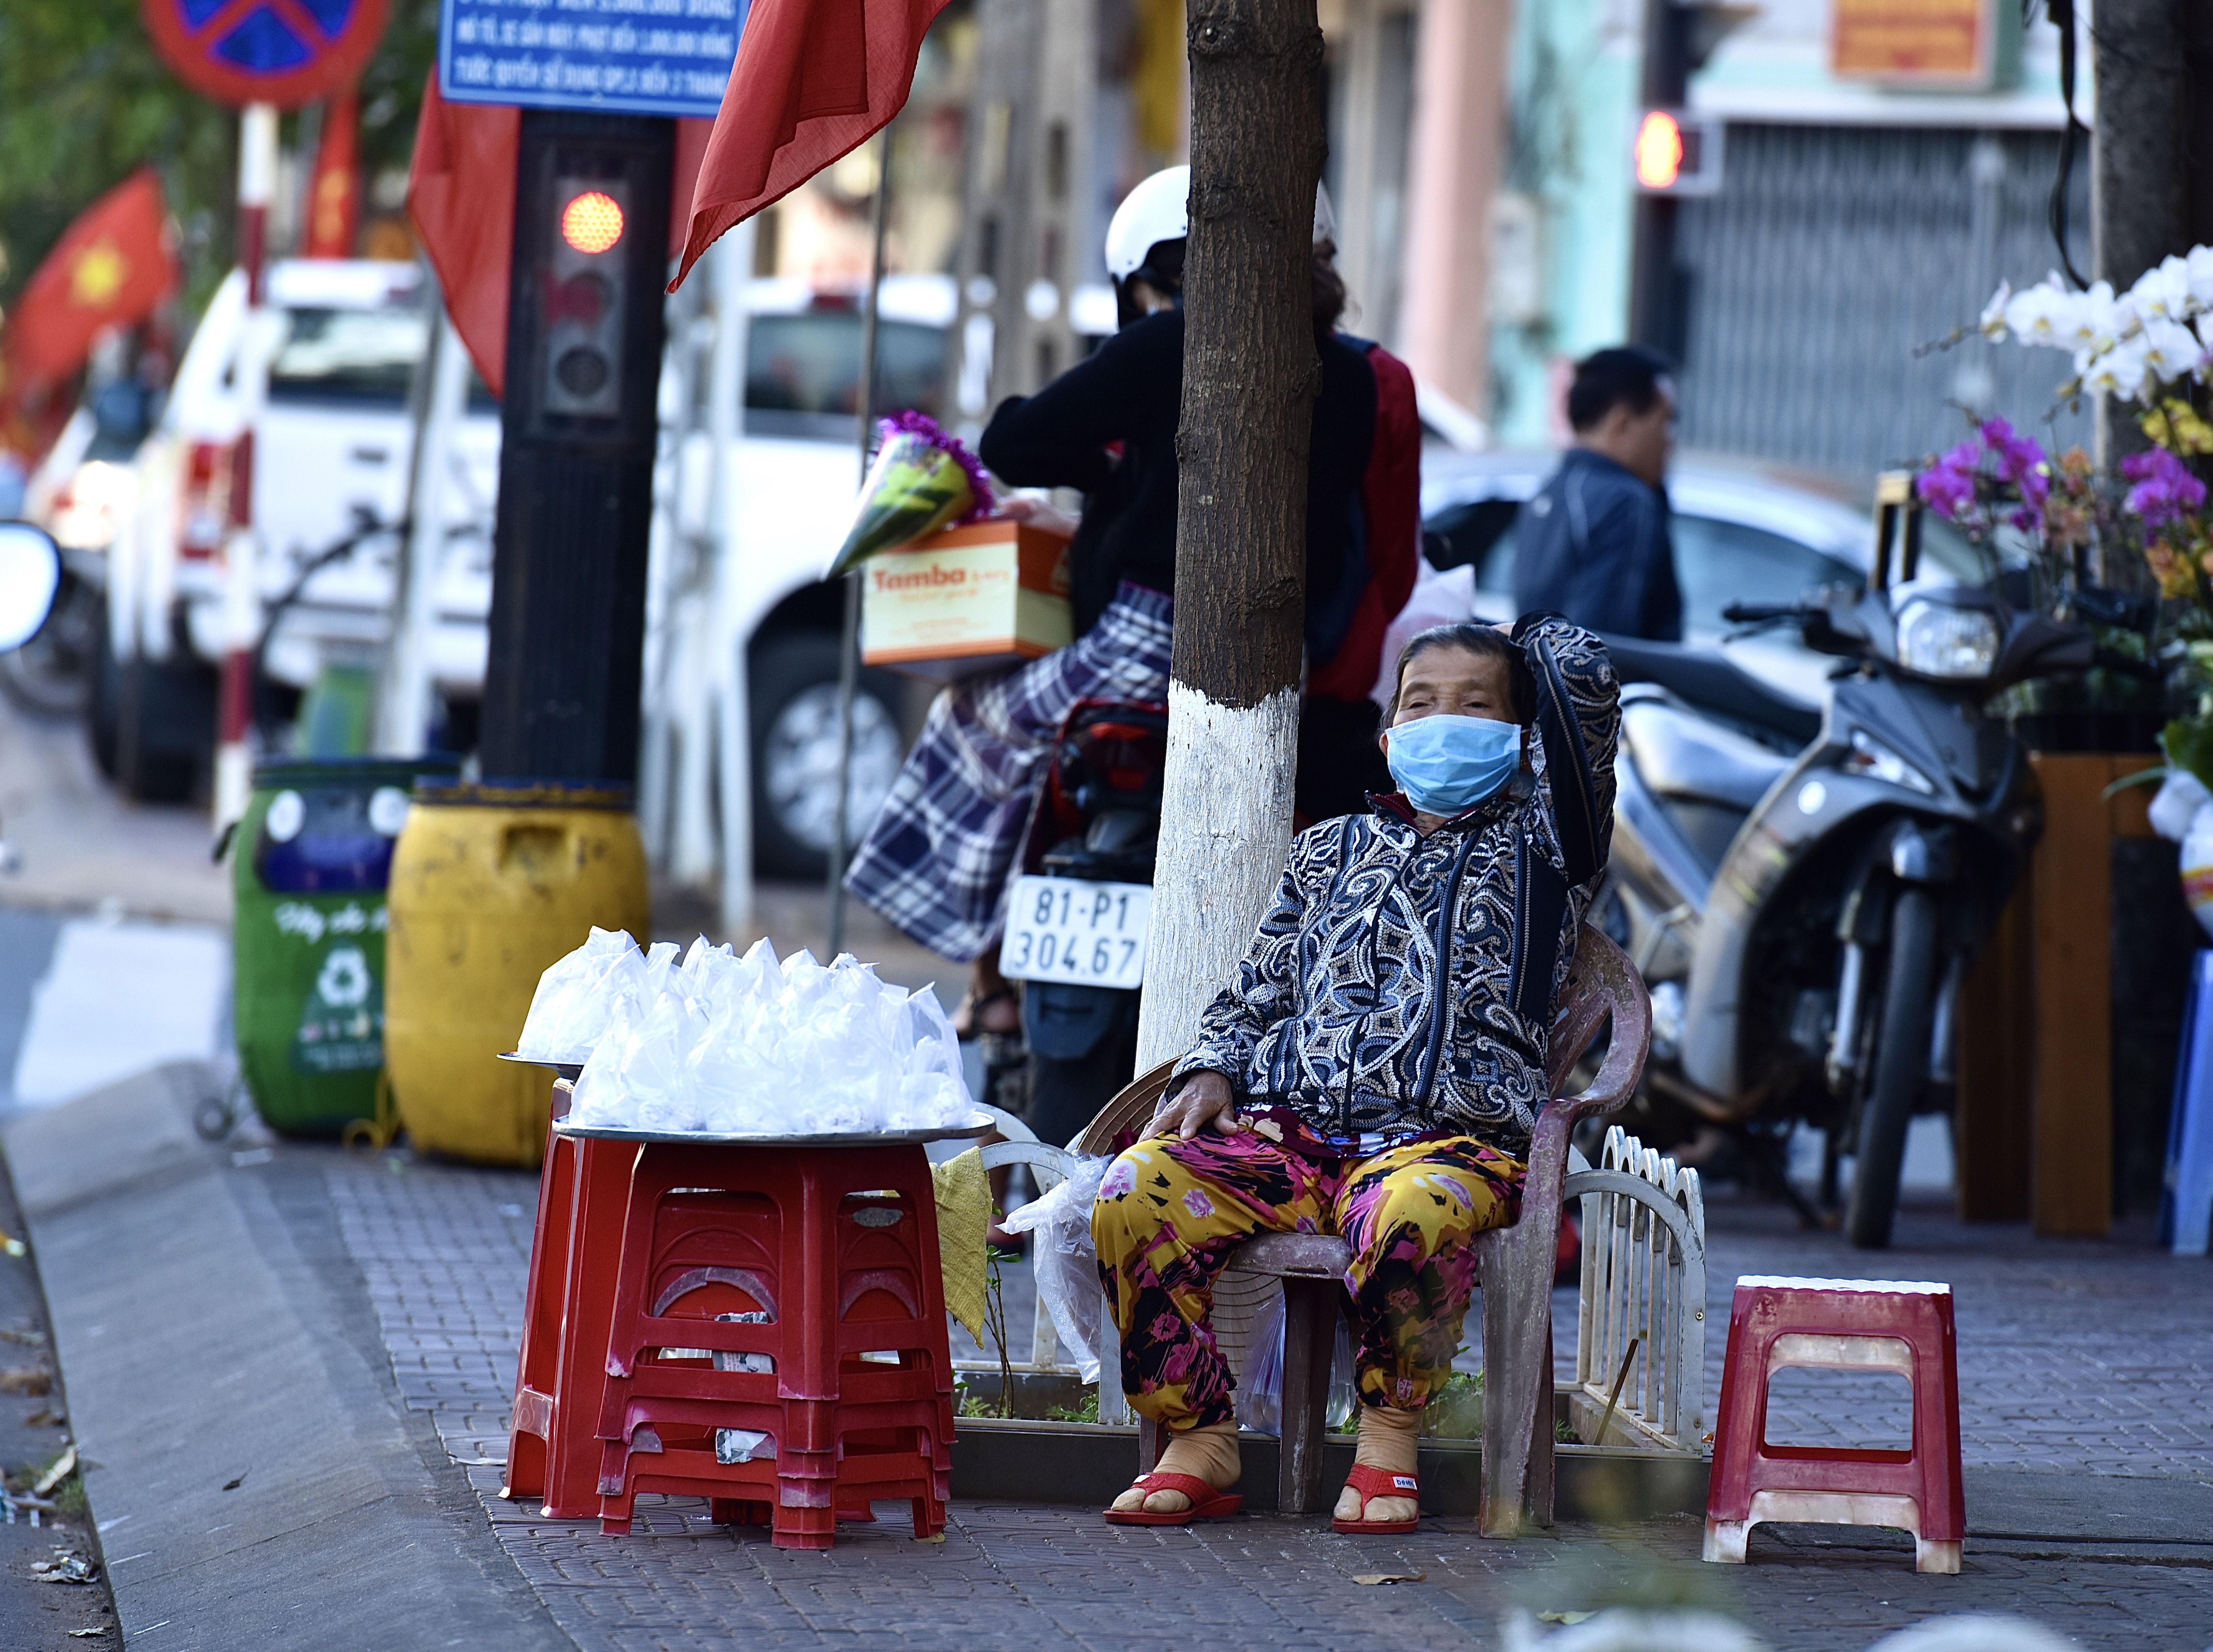 Bà cụ bán kẹo,bánh trên lề đường ngã tư Hùng Vương-Nguyễn Thái Học